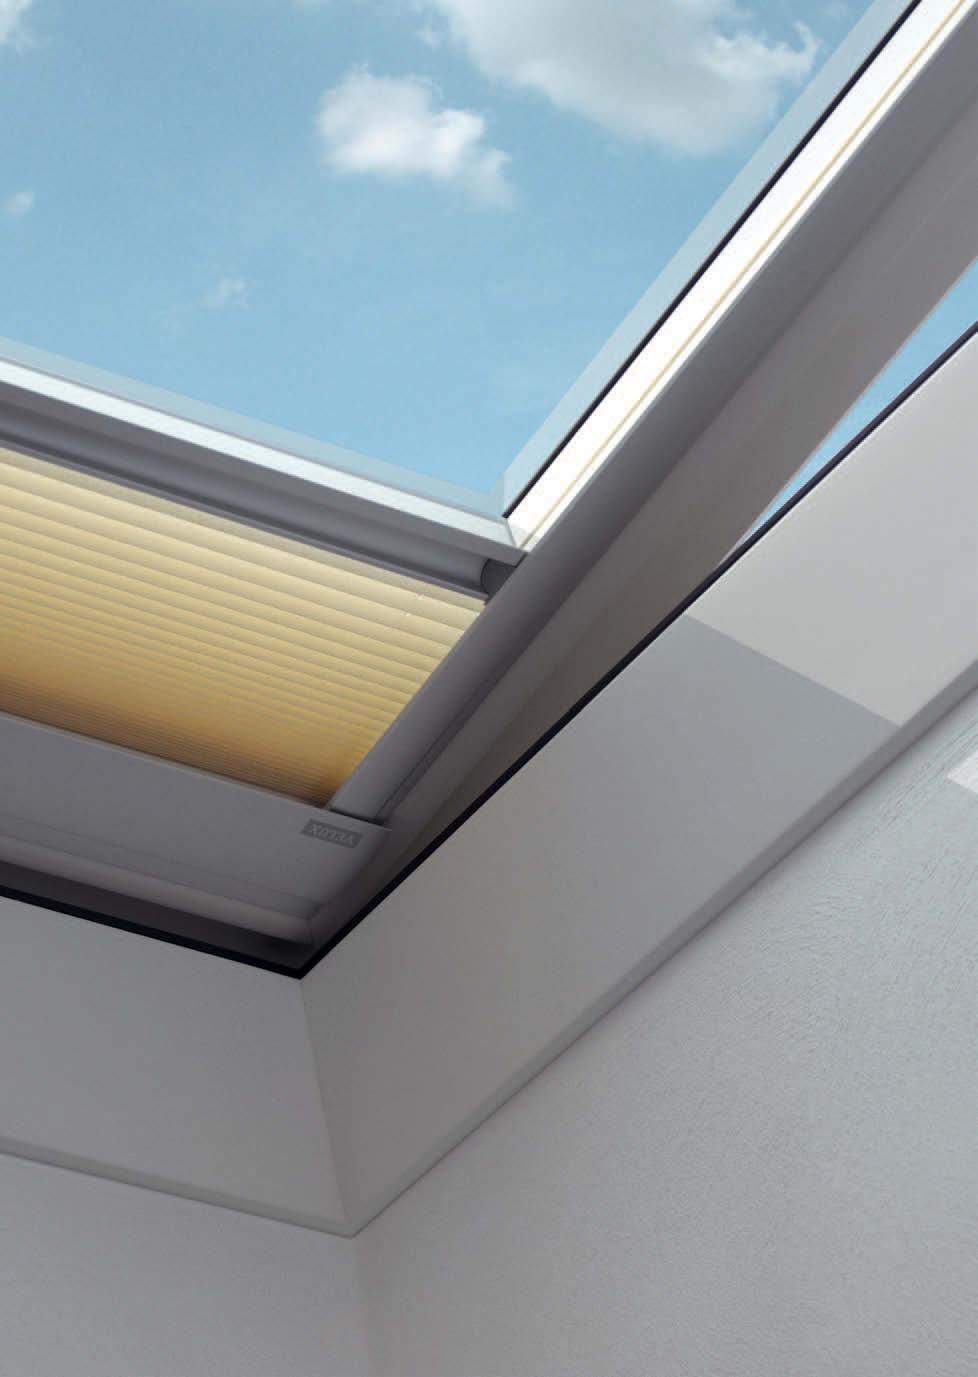 Zubehör Licht-, Sicht- und Hitzeschutz Für noch mehr Komfort unter flachen Dächern INTEGRA Elektro-Faltstore (FMG) 1) n Für weiches, harmonisches